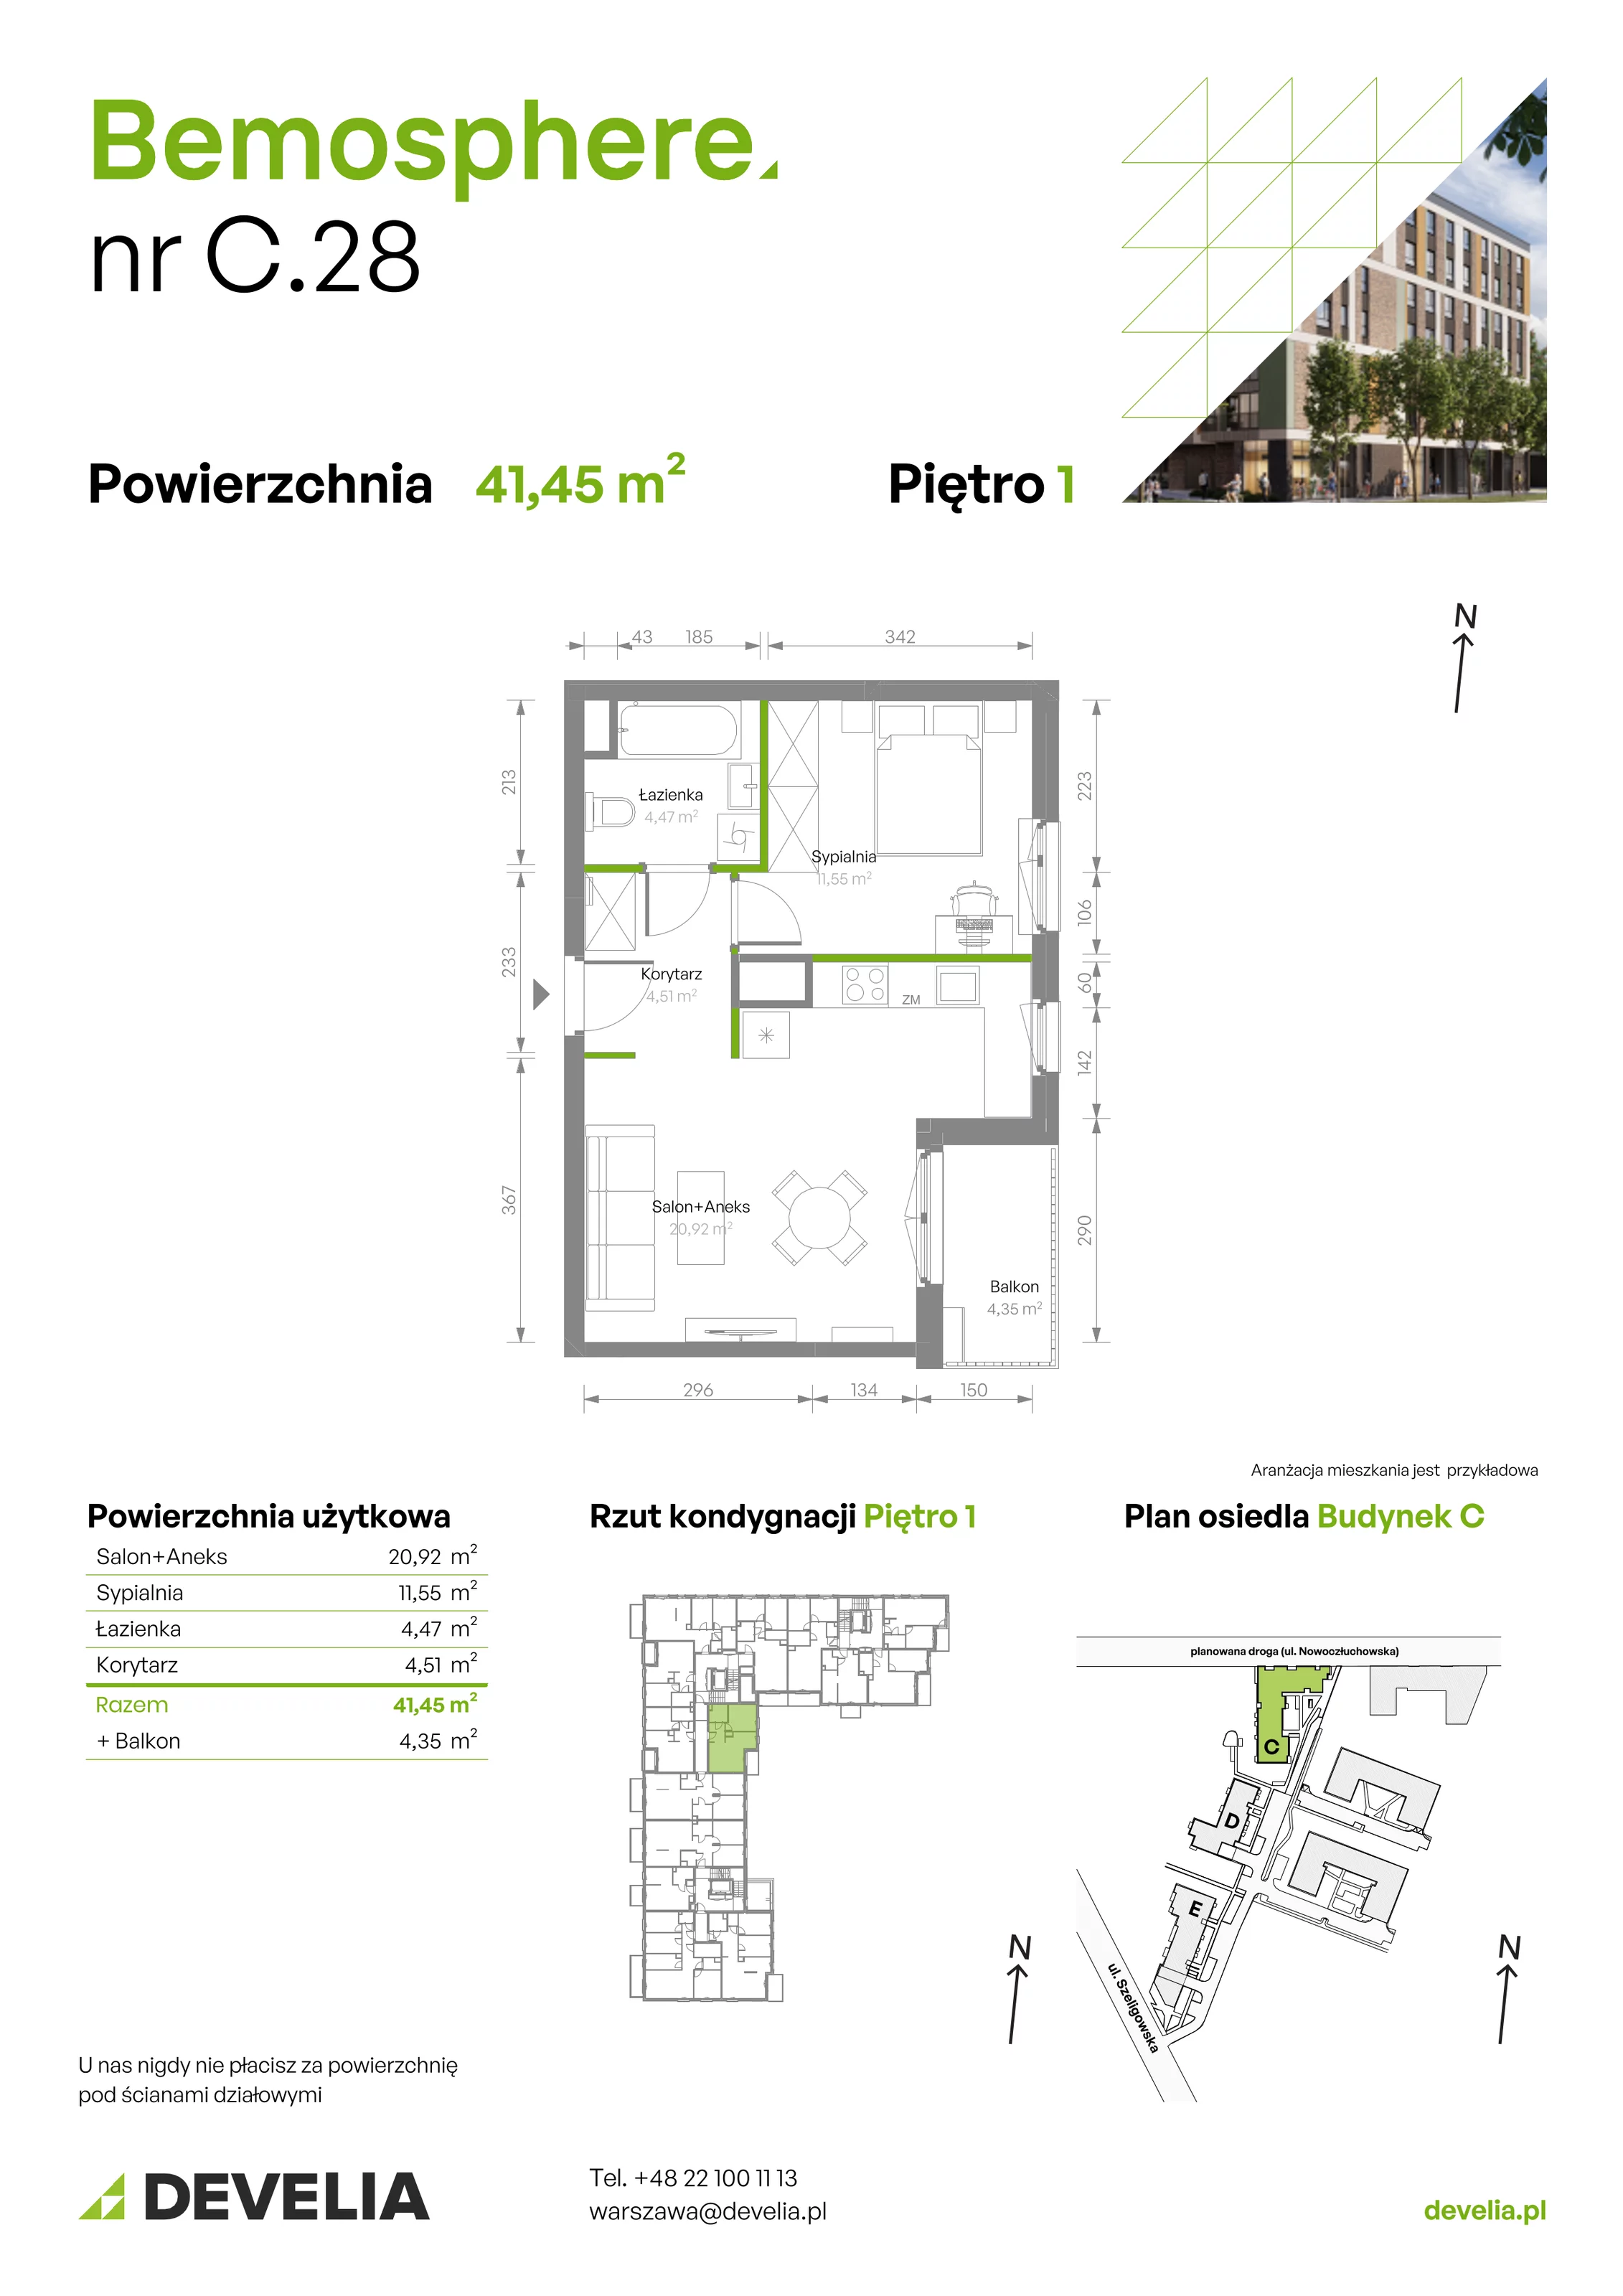 Mieszkanie 41,45 m², piętro 1, oferta nr C/028, Bemosphere, Warszawa, Bemowo, Chrzanów, ul. Szeligowska 24